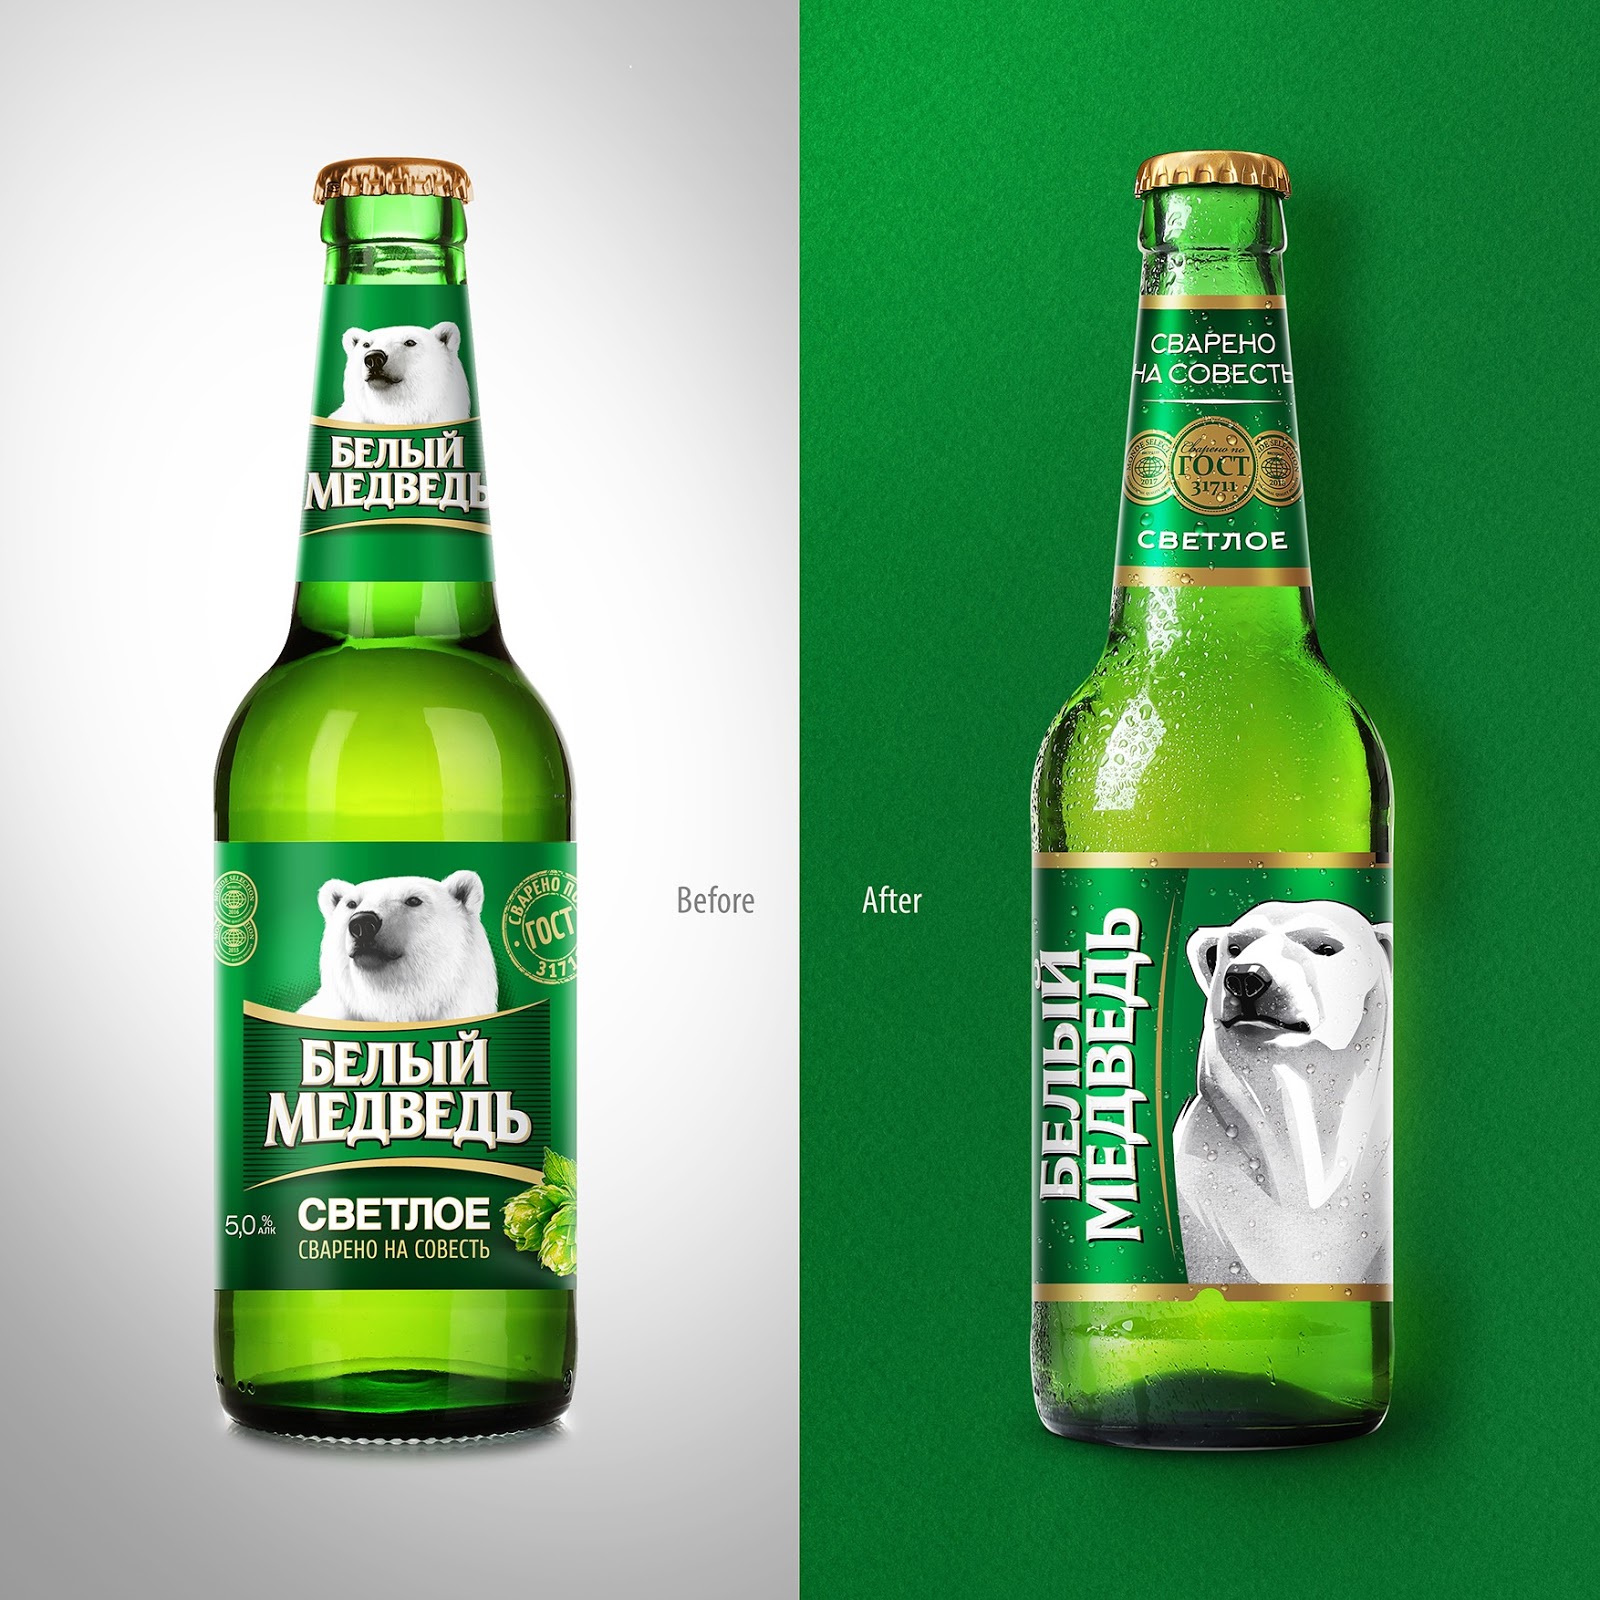 重新设计流行的白熊啤酒品牌包装(图2)